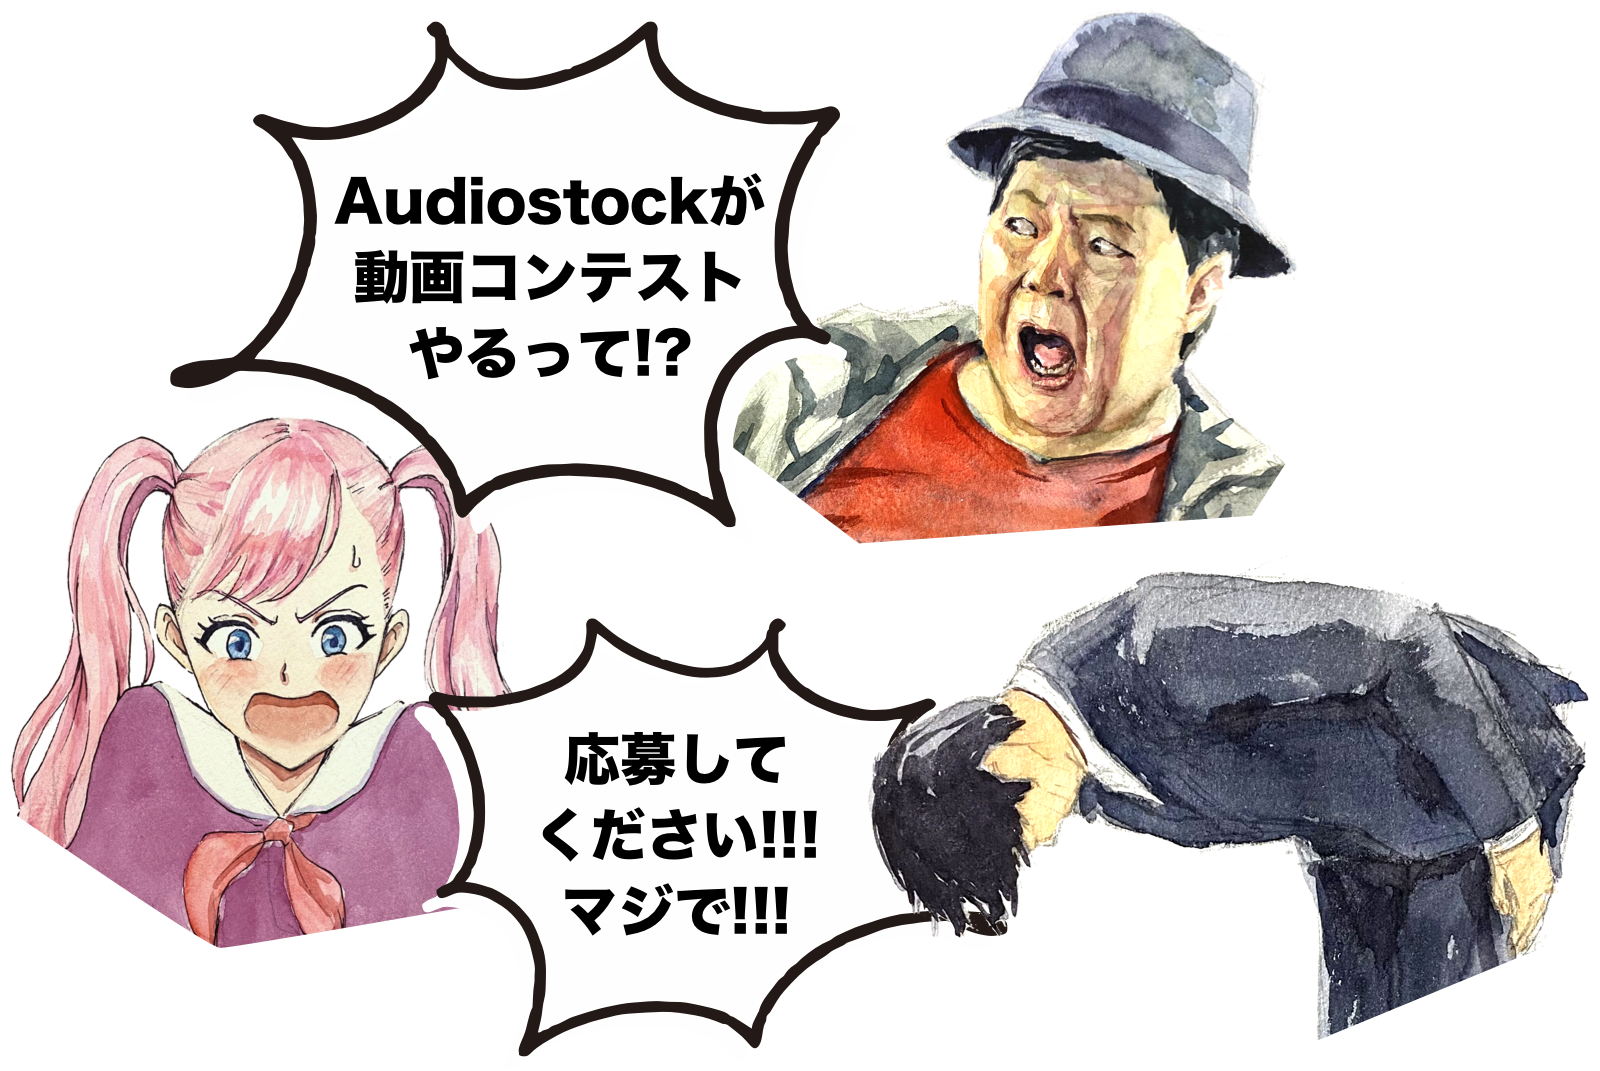 おじさん「Audiostockが動画コンテストやるって!?」スーツの男「応募してください!!! マジで!!!」